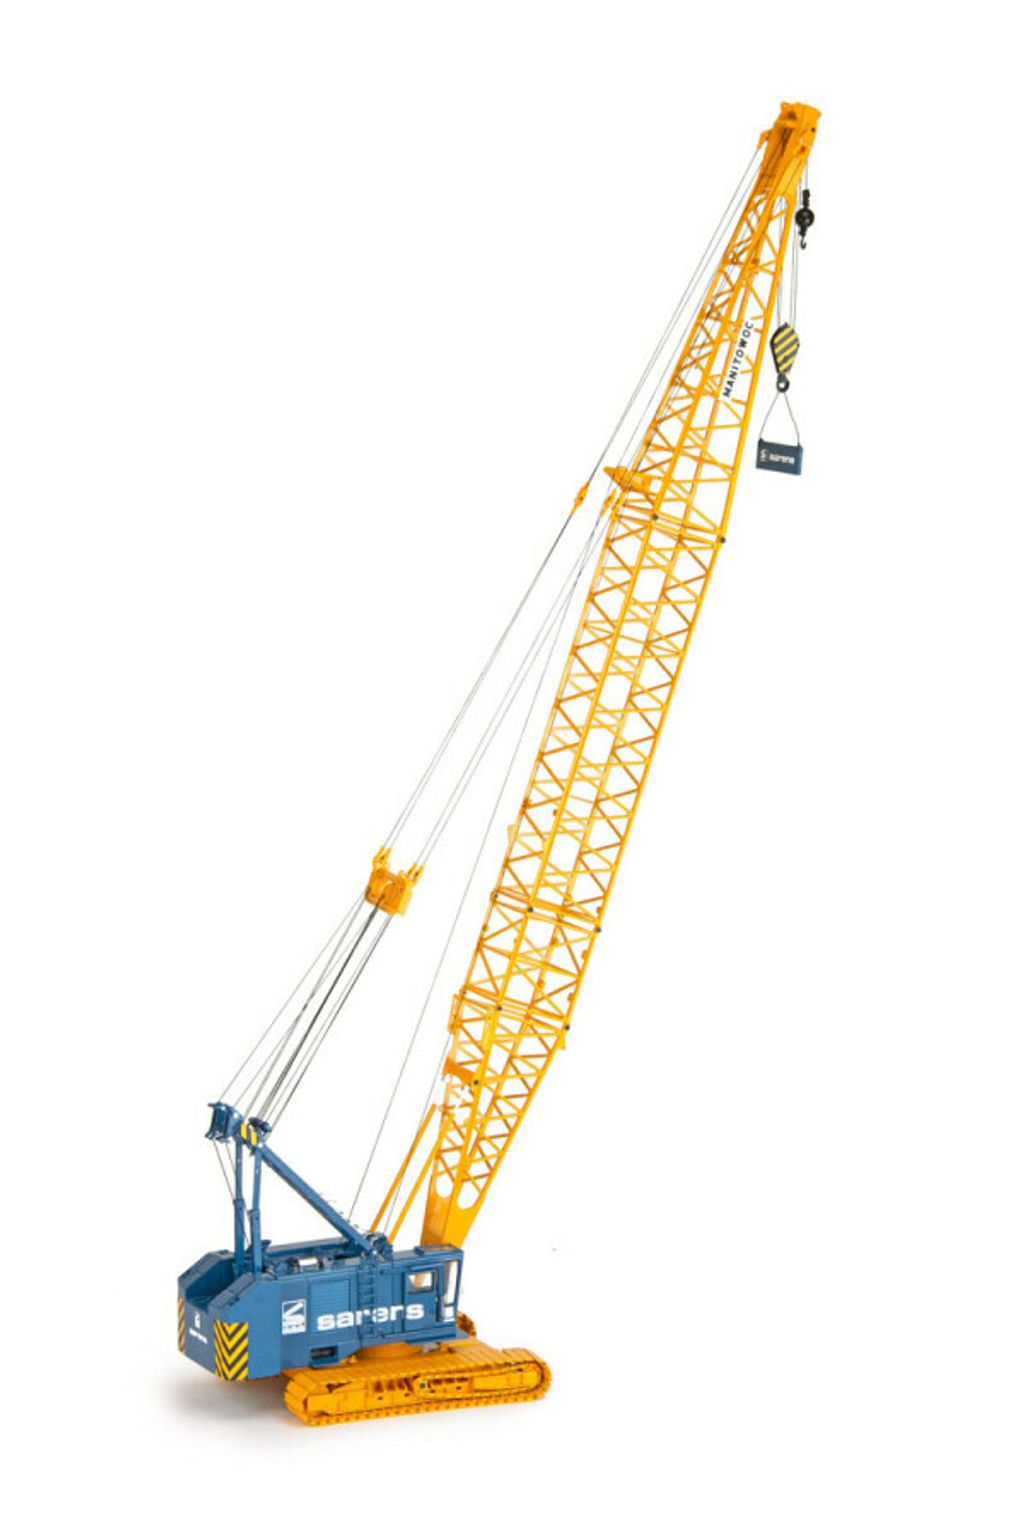 sarens-manitowoc-4100-crawler-crane (1)